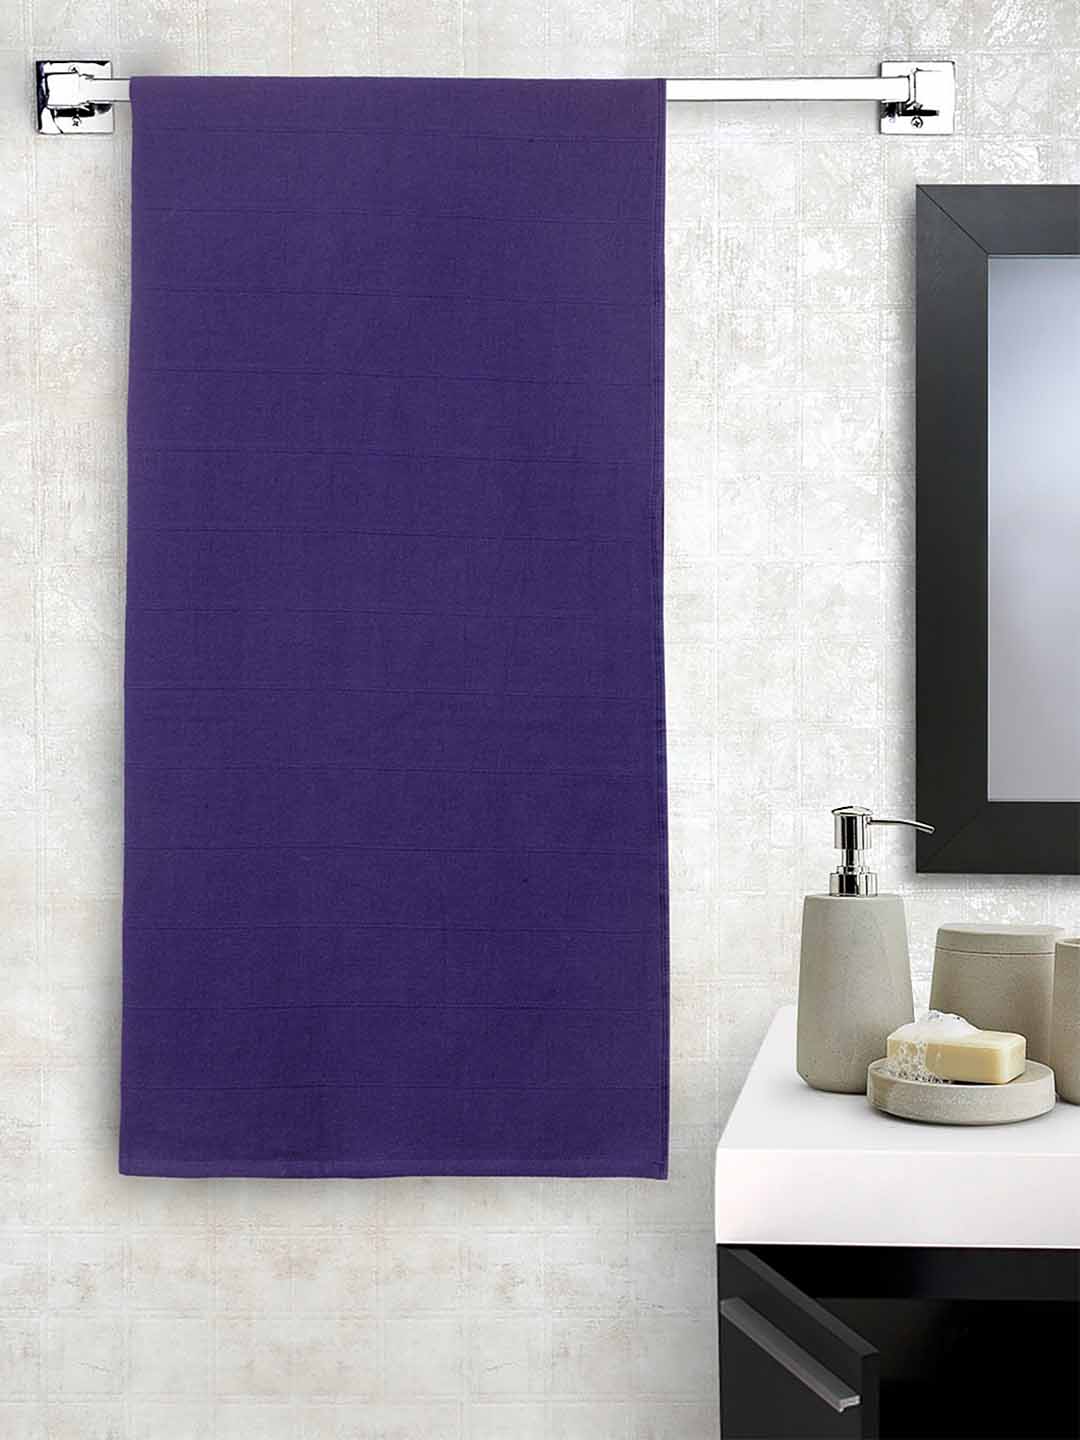 Spaces Livlite Navy Blue Bath Towel (Blue)